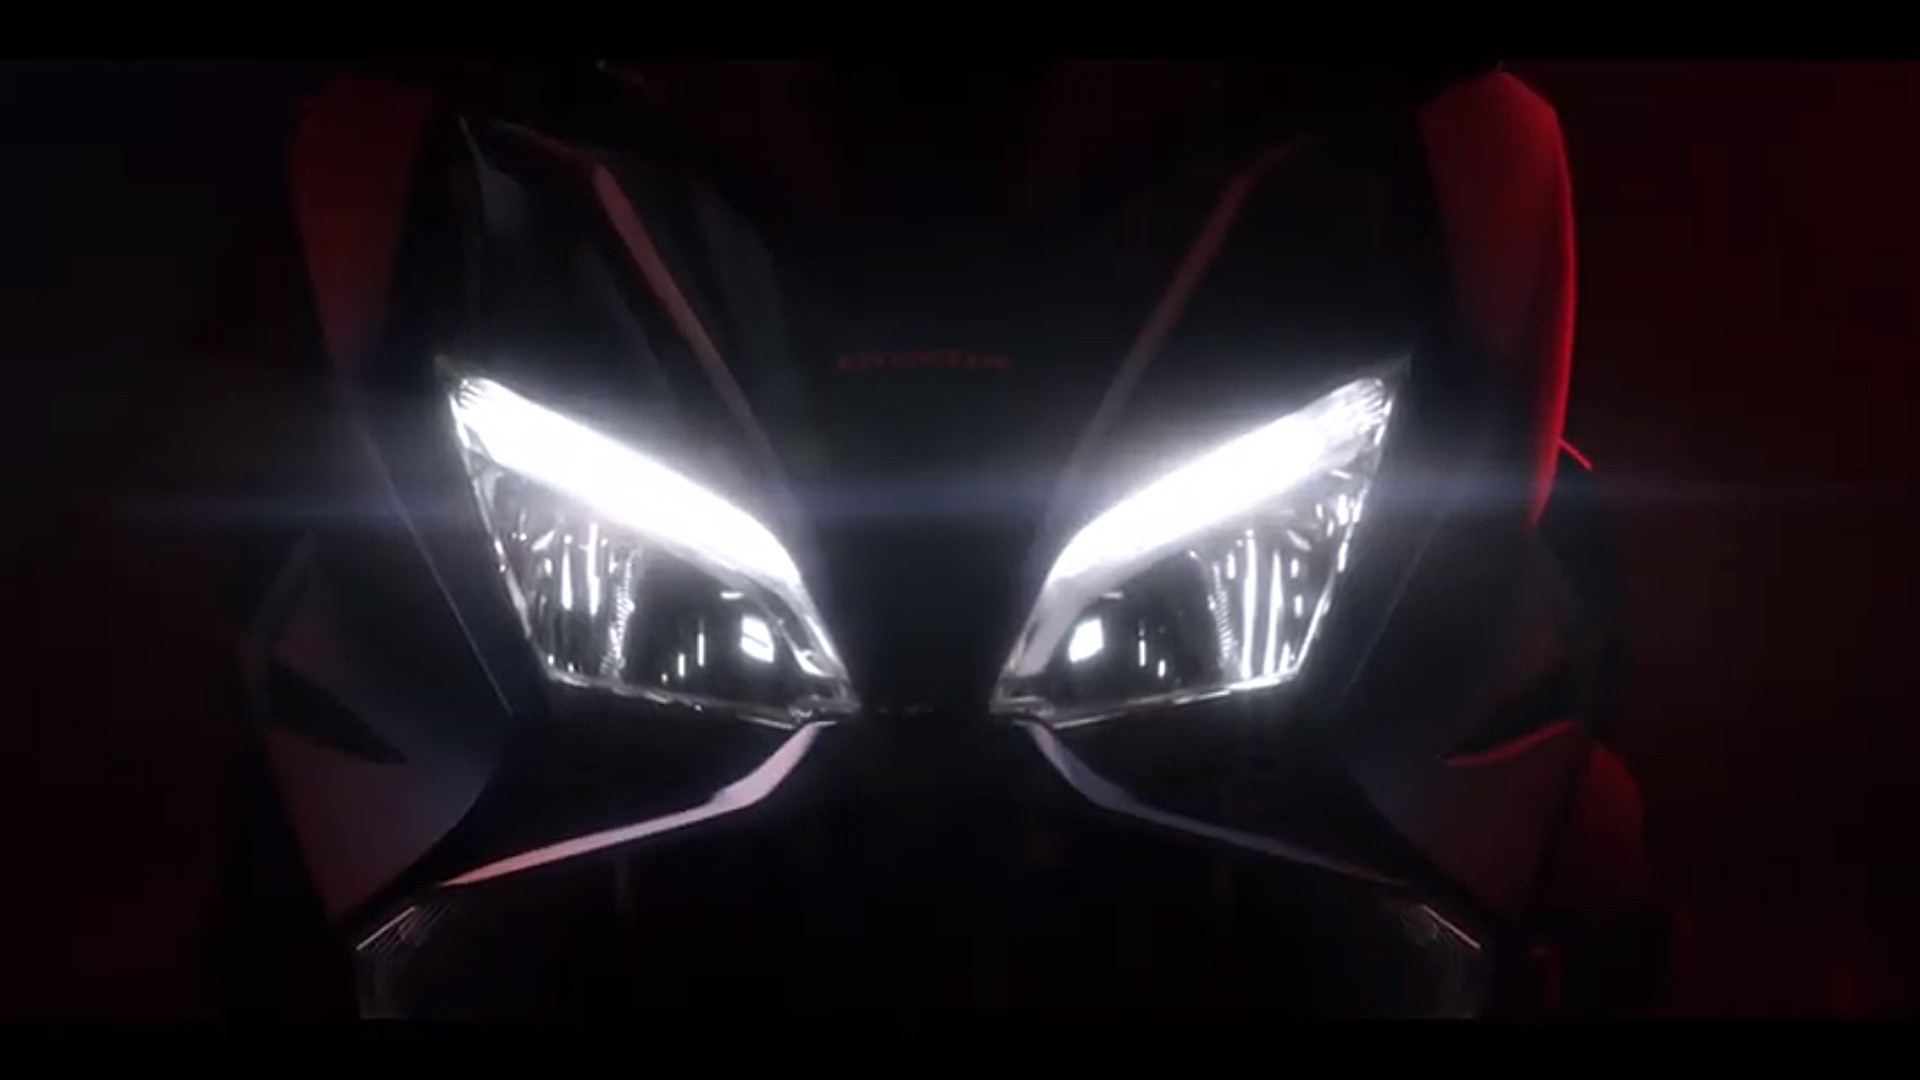 Confirmado, habrá un nuevo Honda Forza 750 en menos de un mes